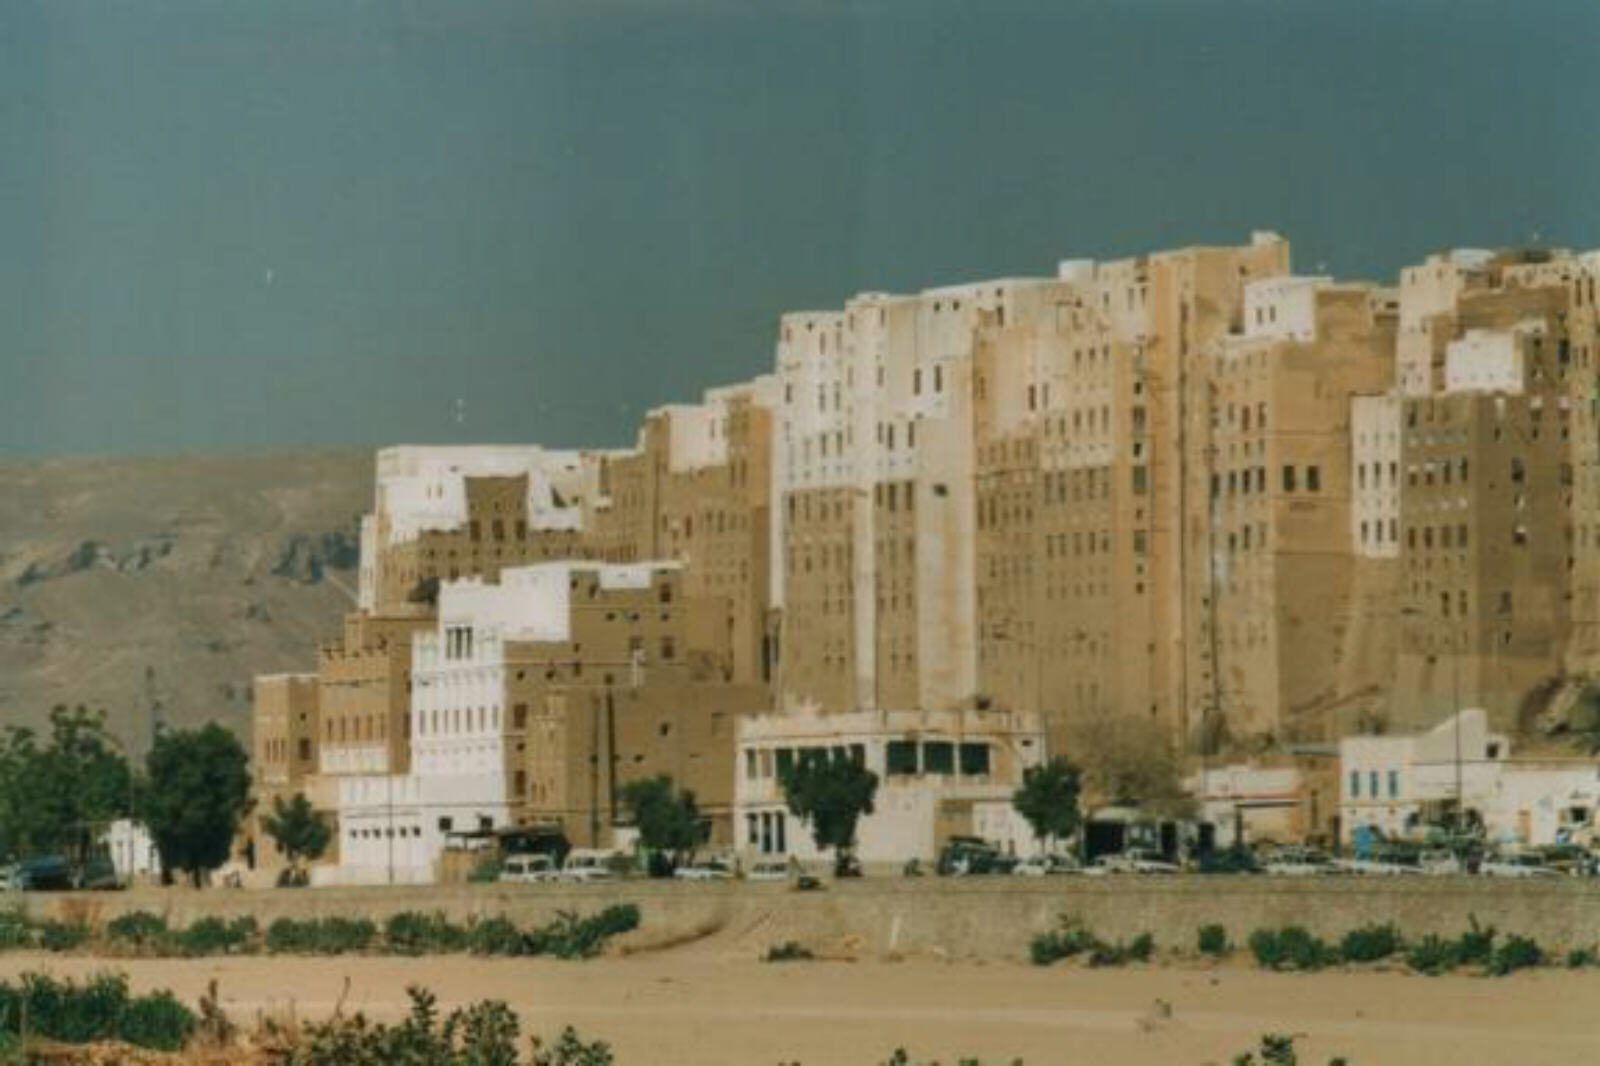 Tower houses in Shibam, Wadi Hadramout, Yemen